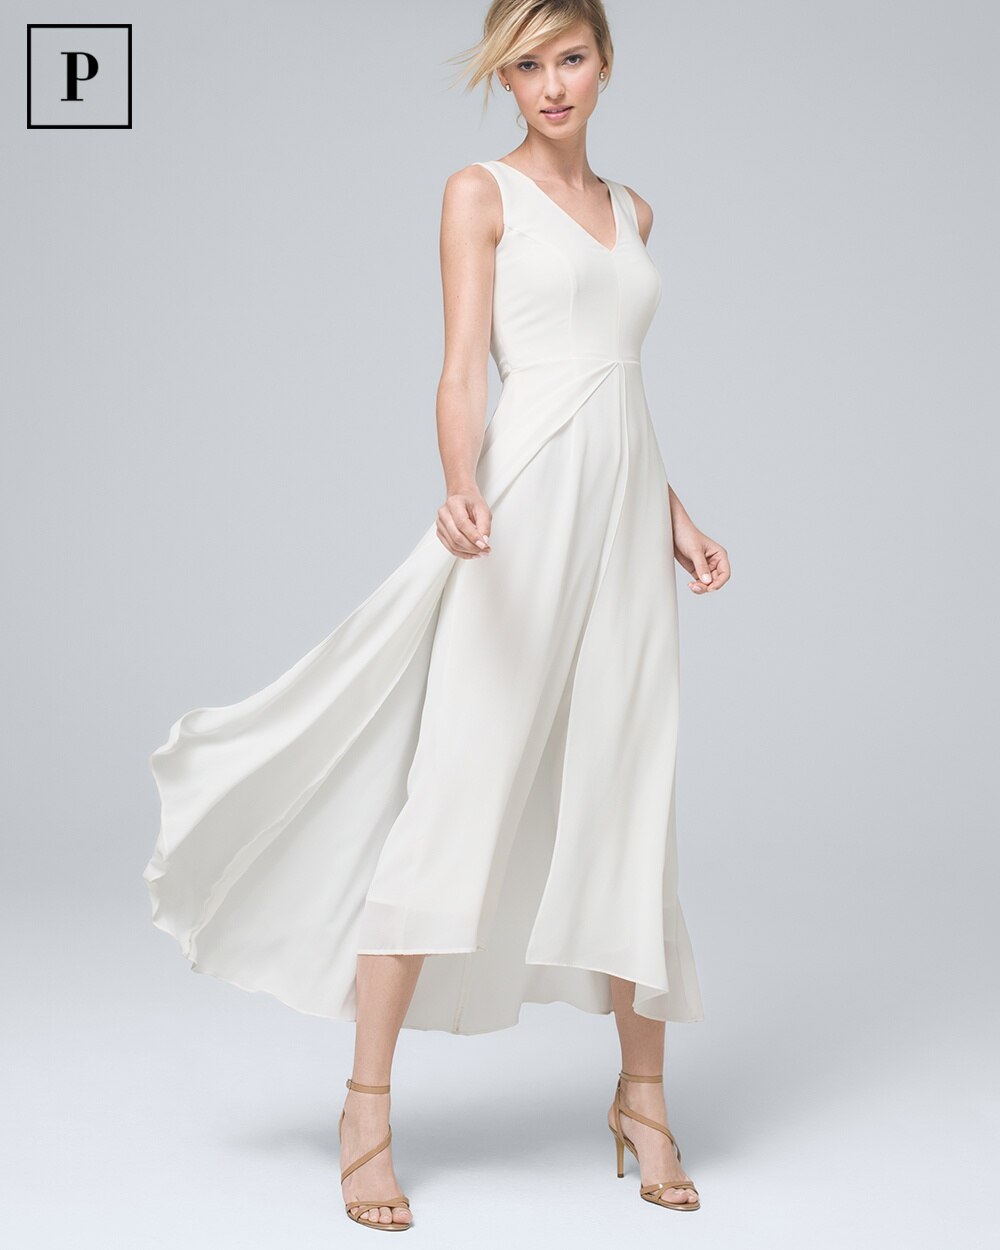 petite white gown